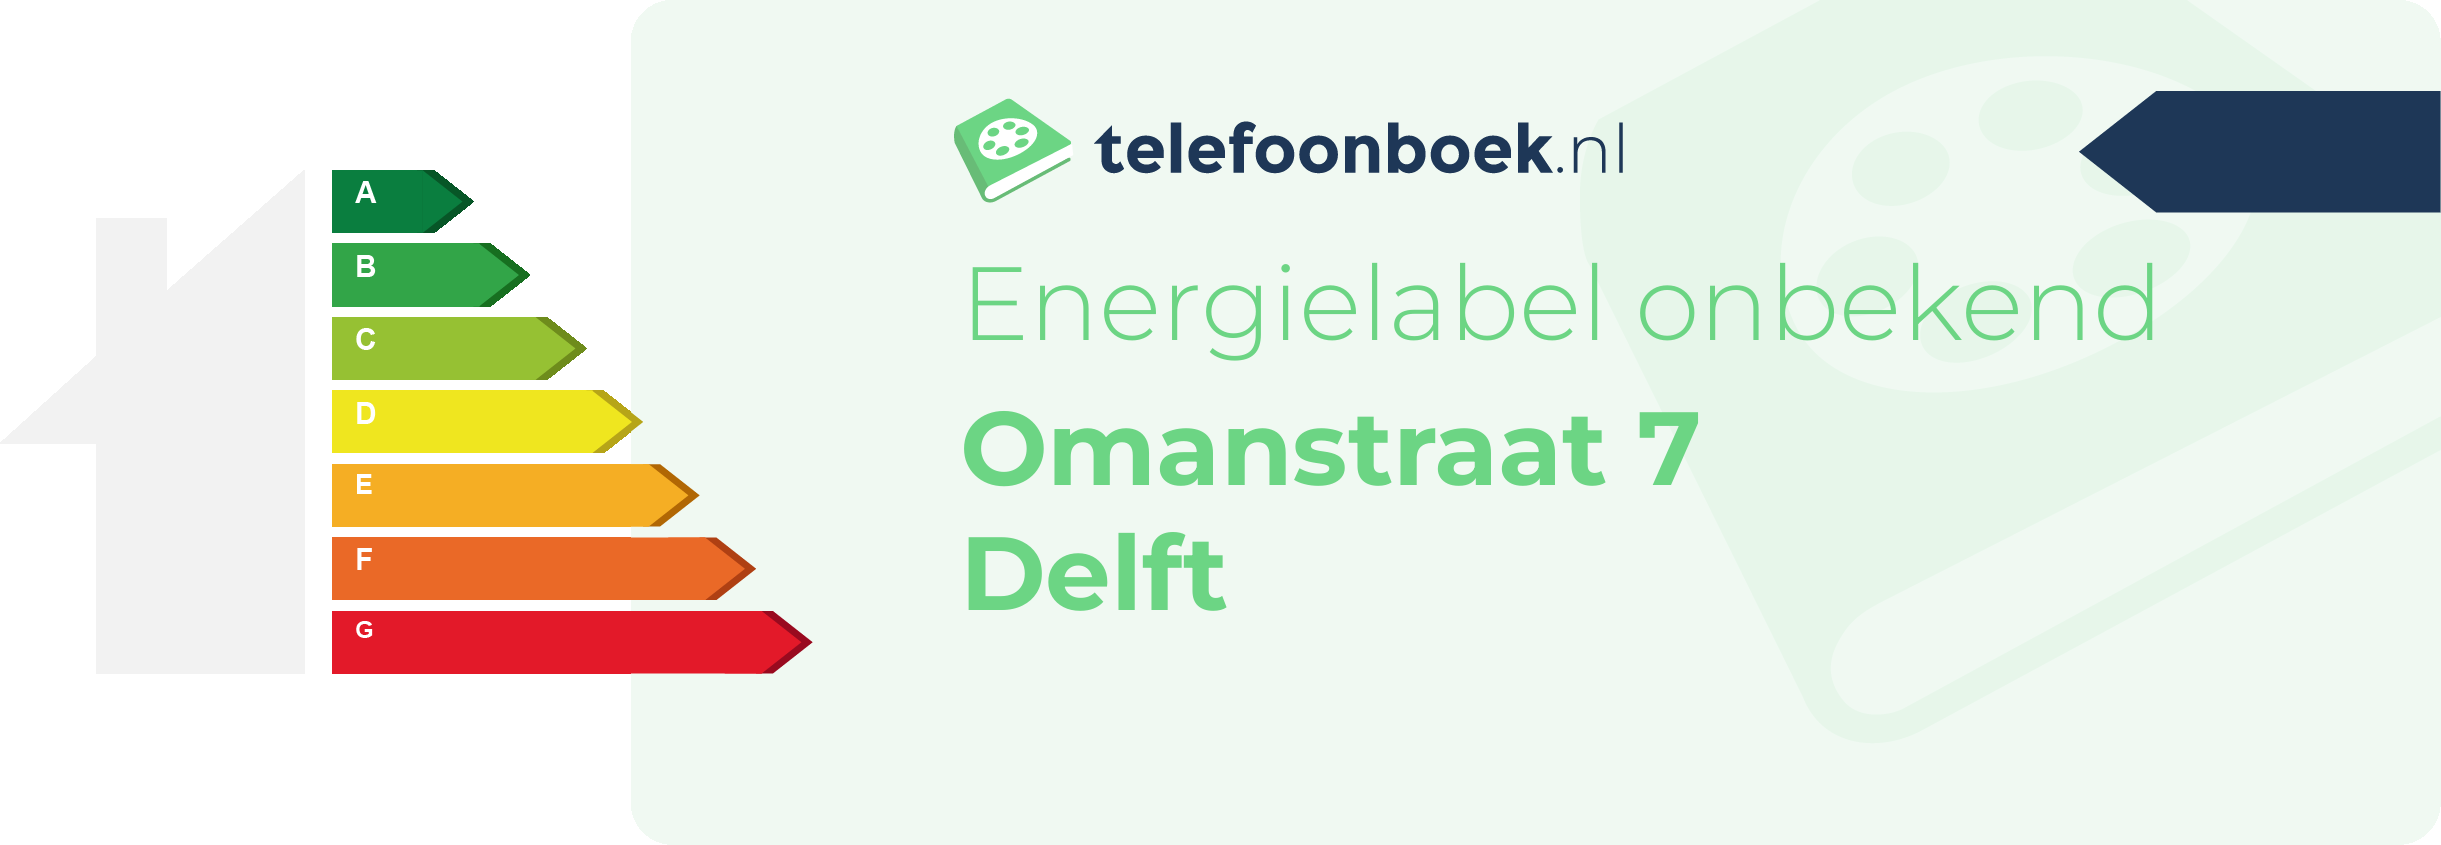 Energielabel Omanstraat 7 Delft